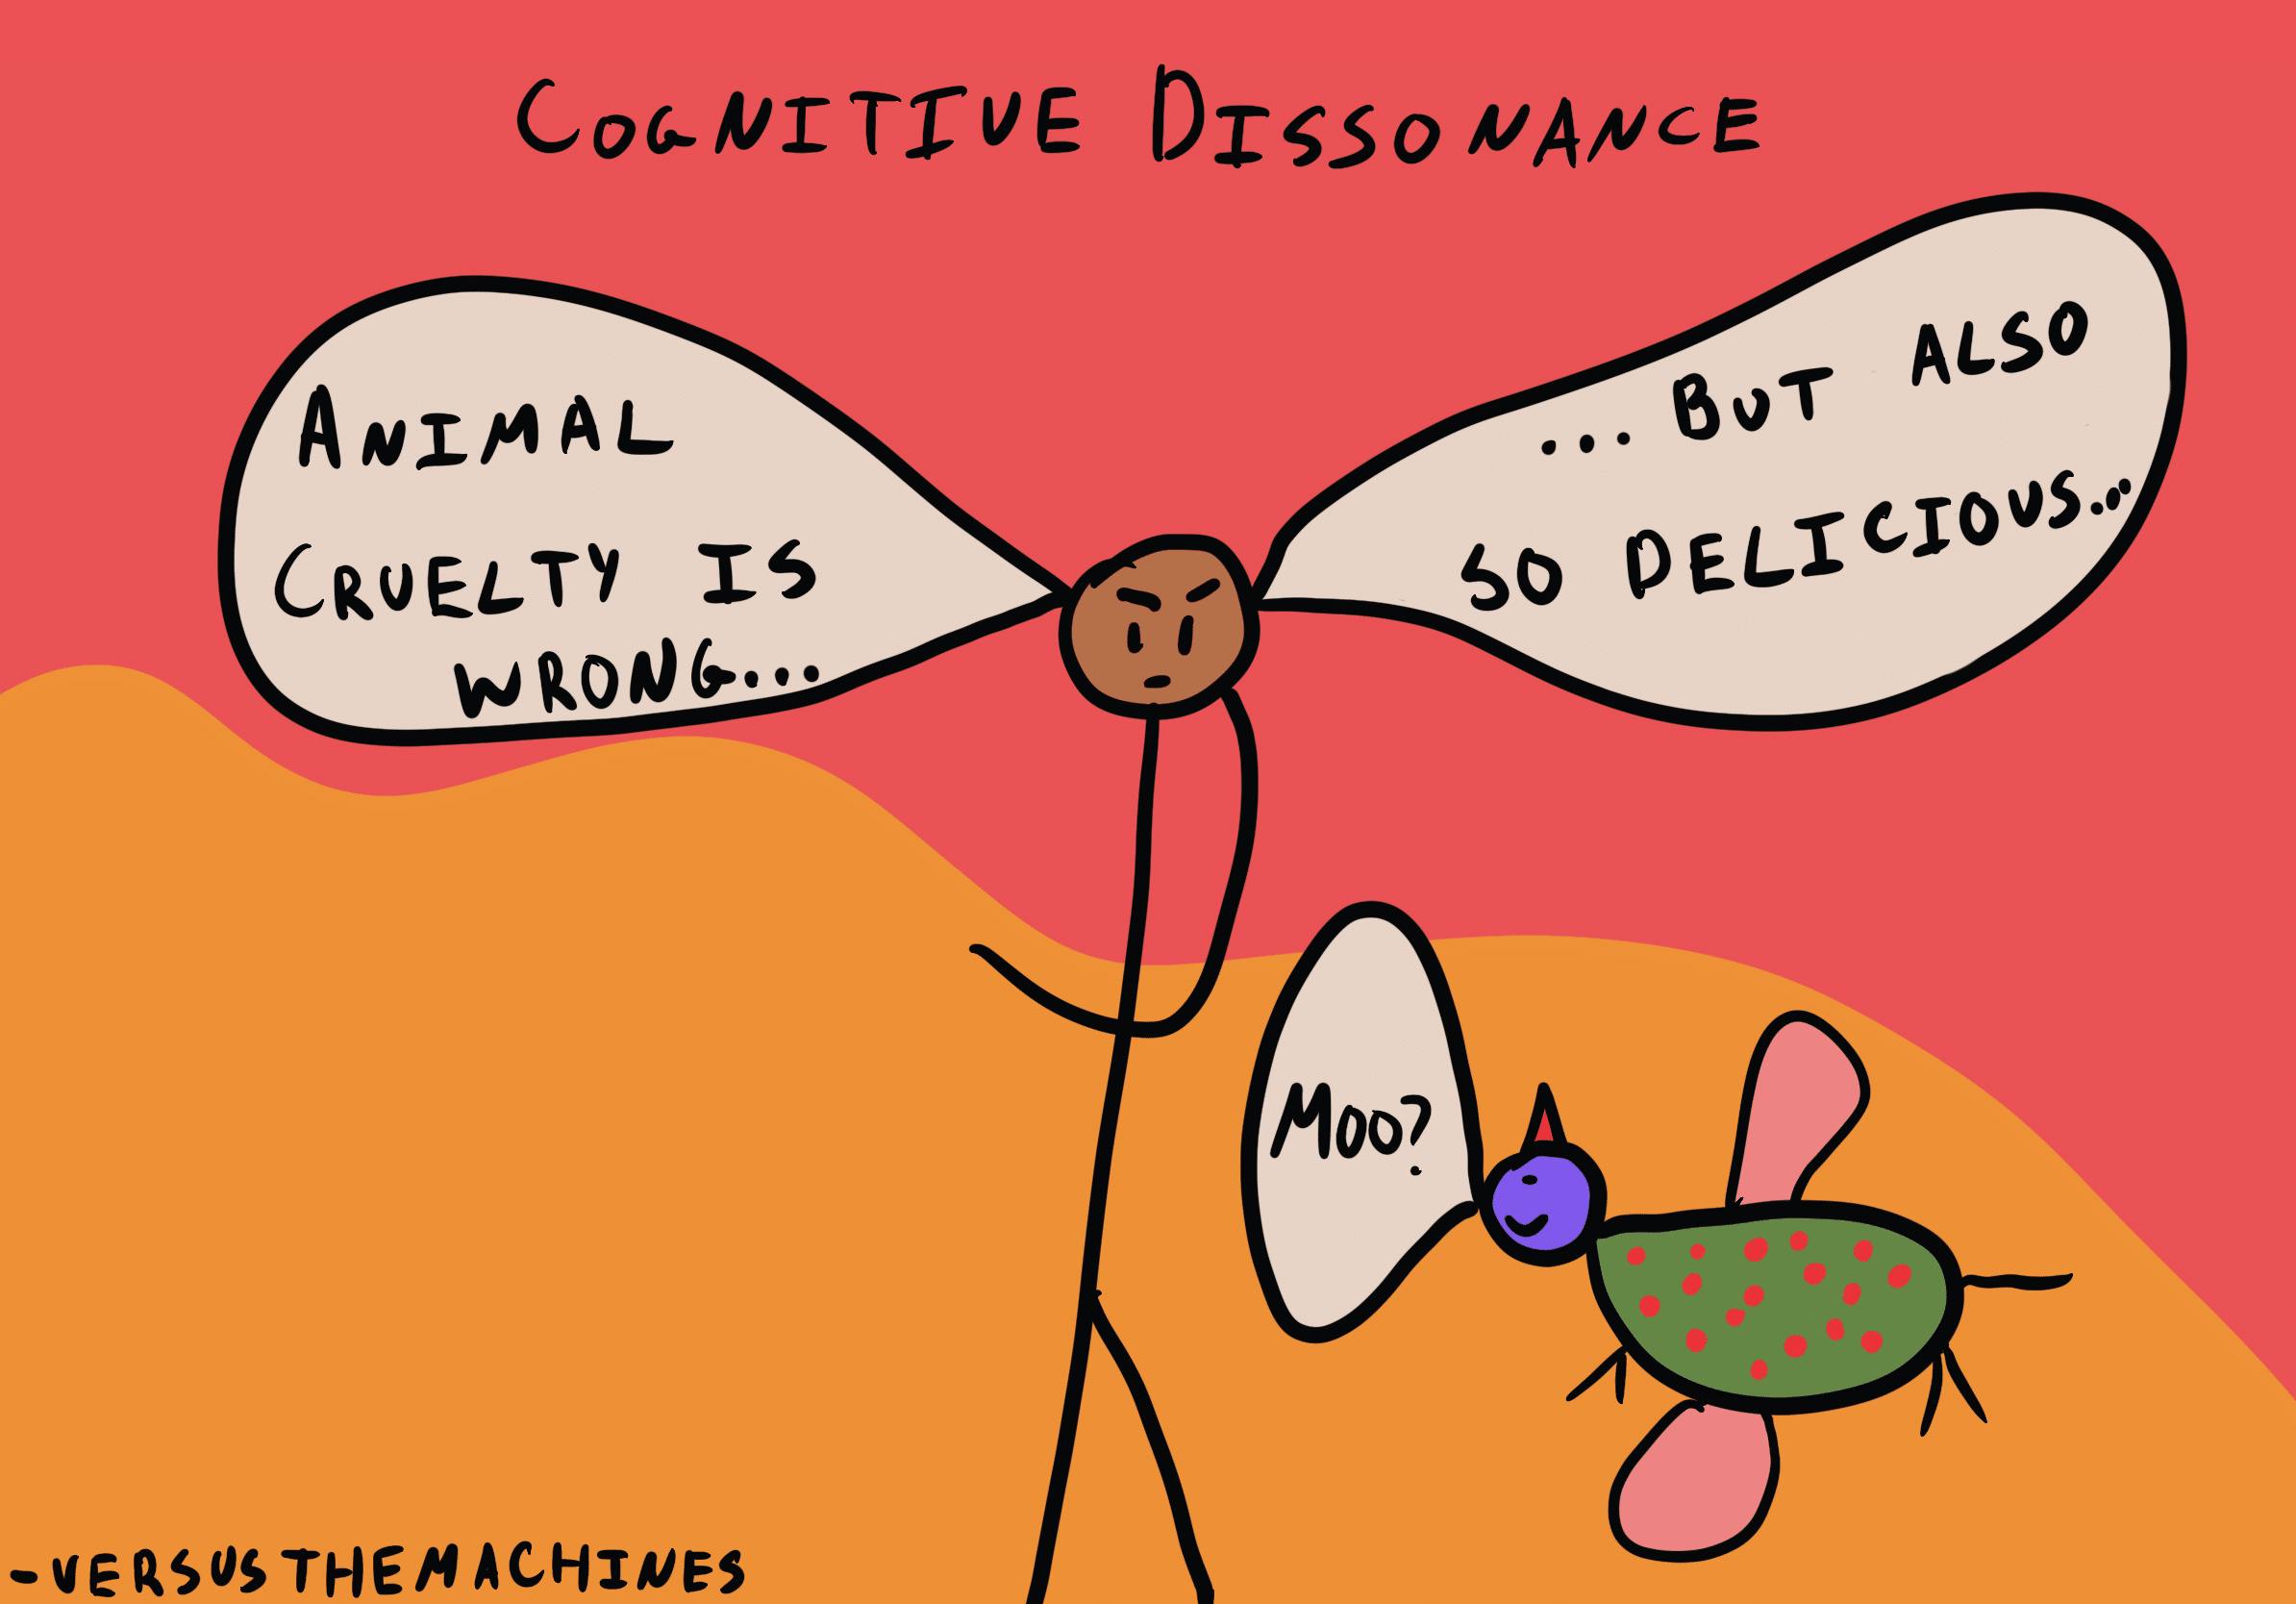 Cognitive Dissonance - The Decision Lab